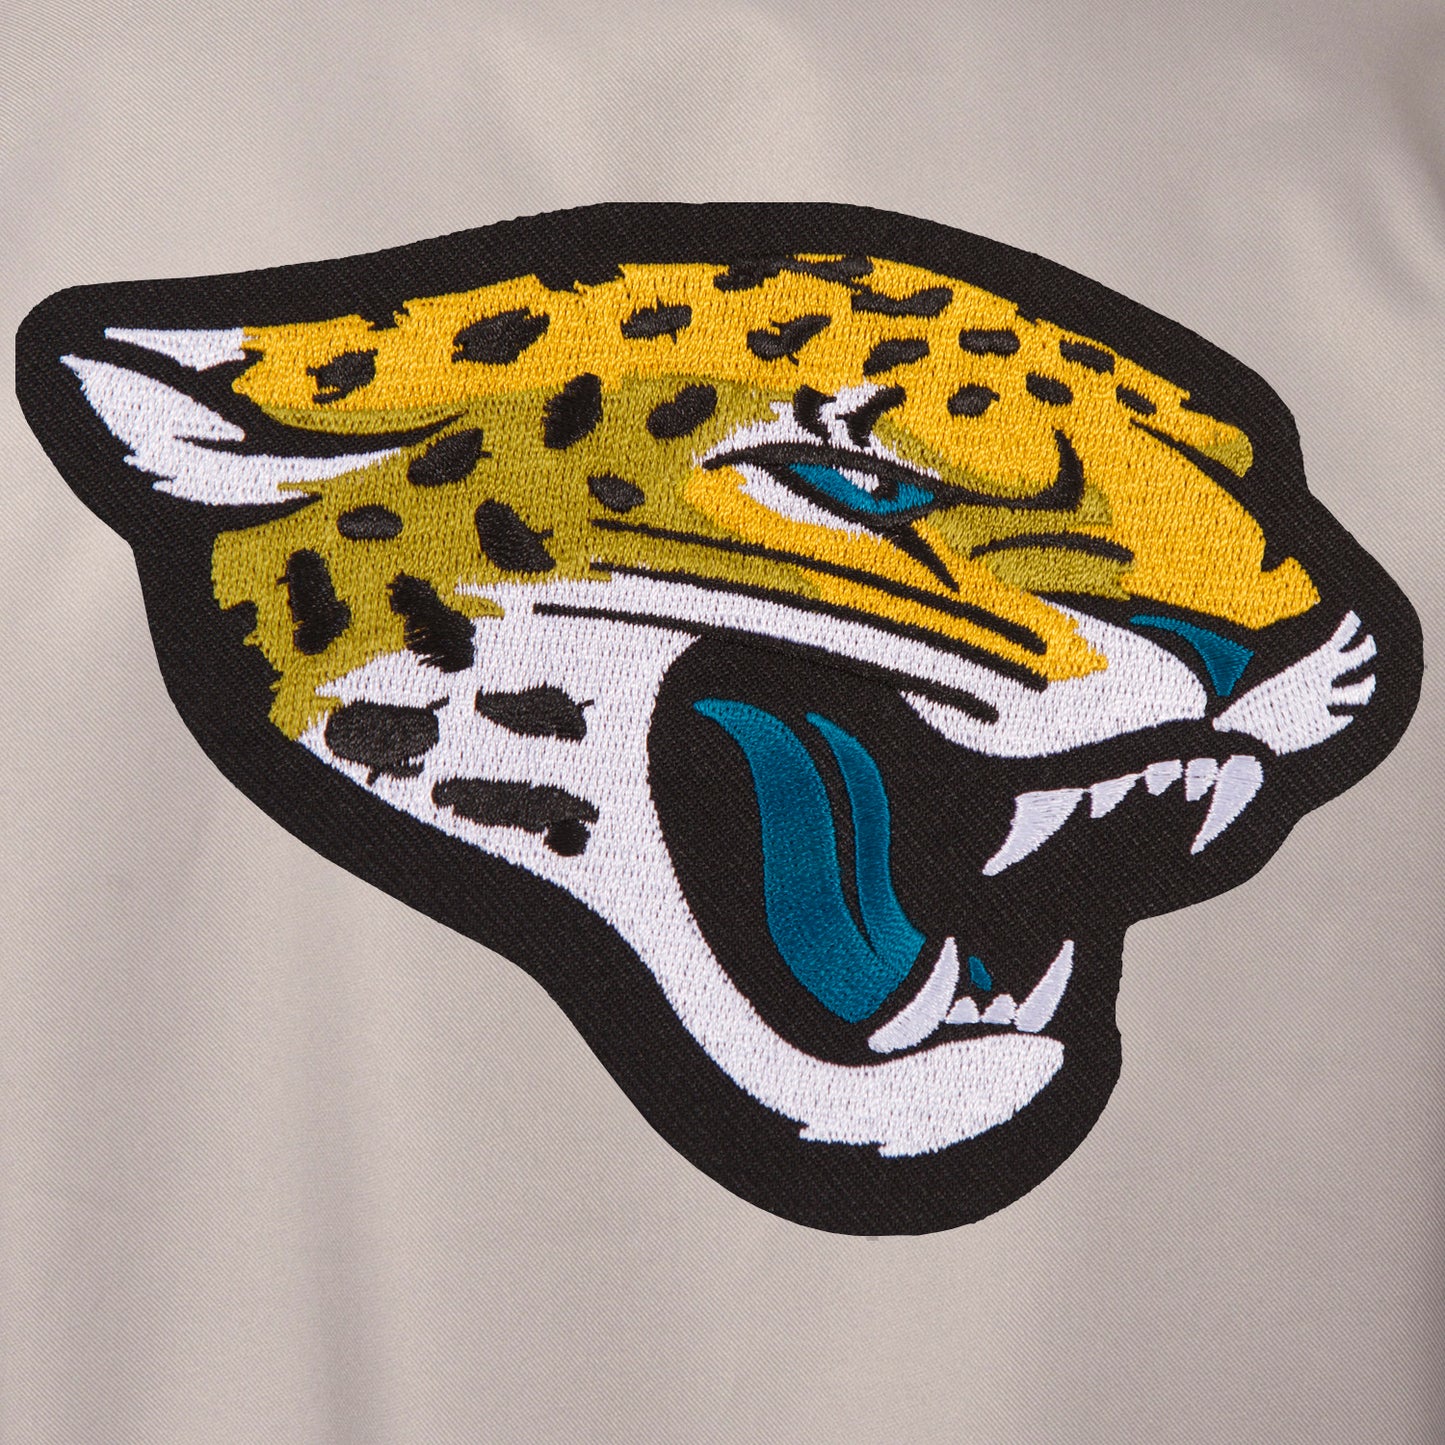 Jacksonville Jaguars Poly-Twill Jacket